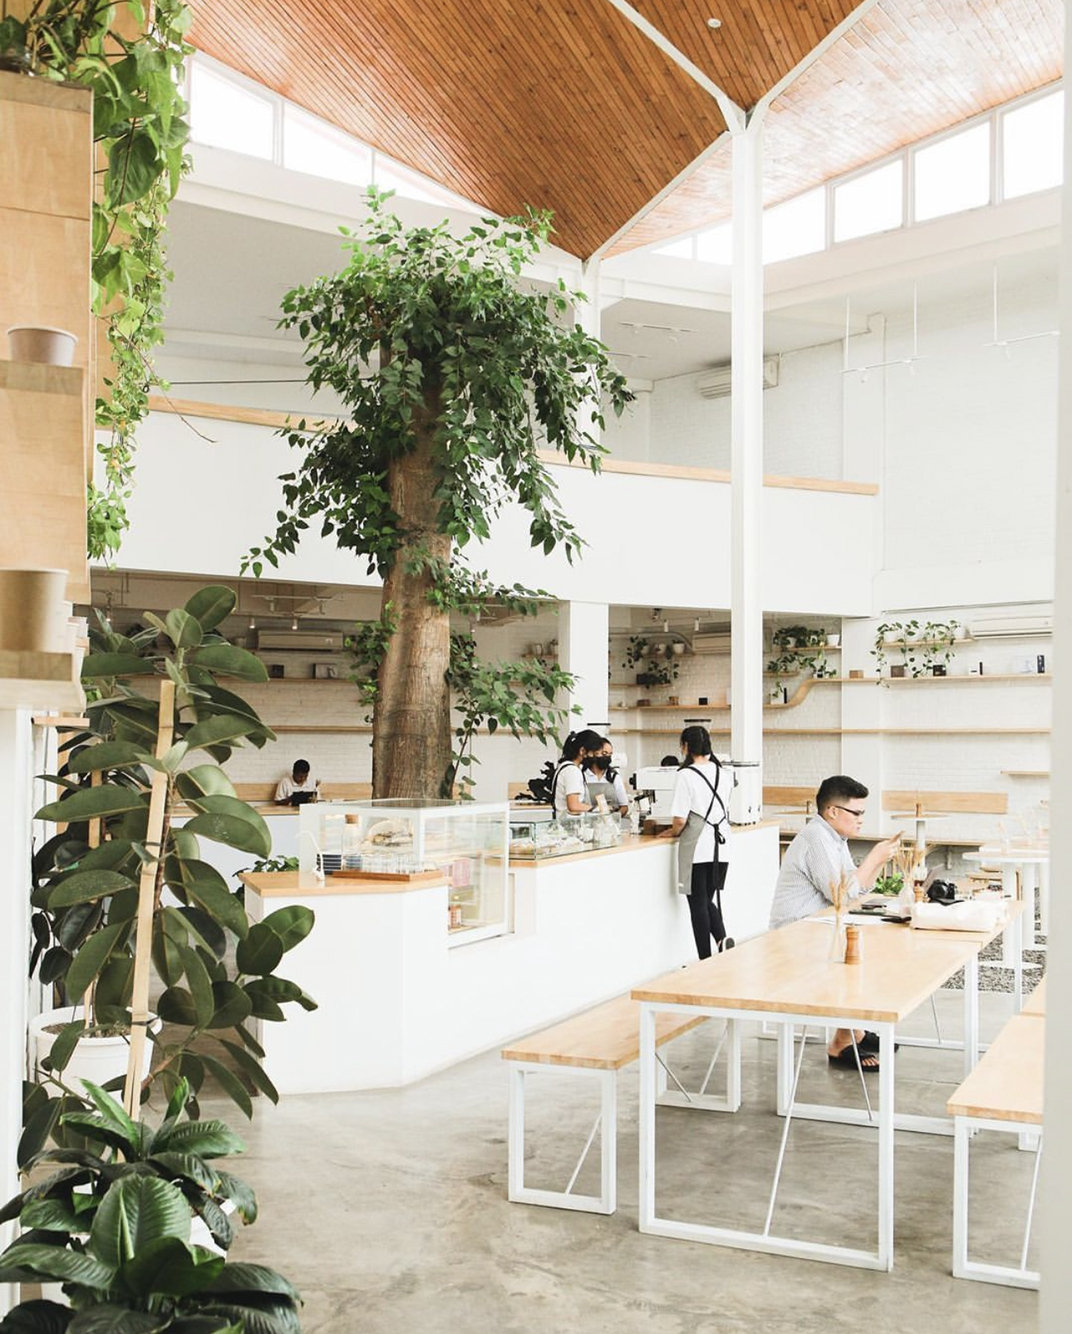 花园概念咖啡馆Cafe Meil Bali 巴厘岛 深圳 上海 北京 广州 武汉 咖啡店 餐饮商业 logo设计 vi设计 空间设计